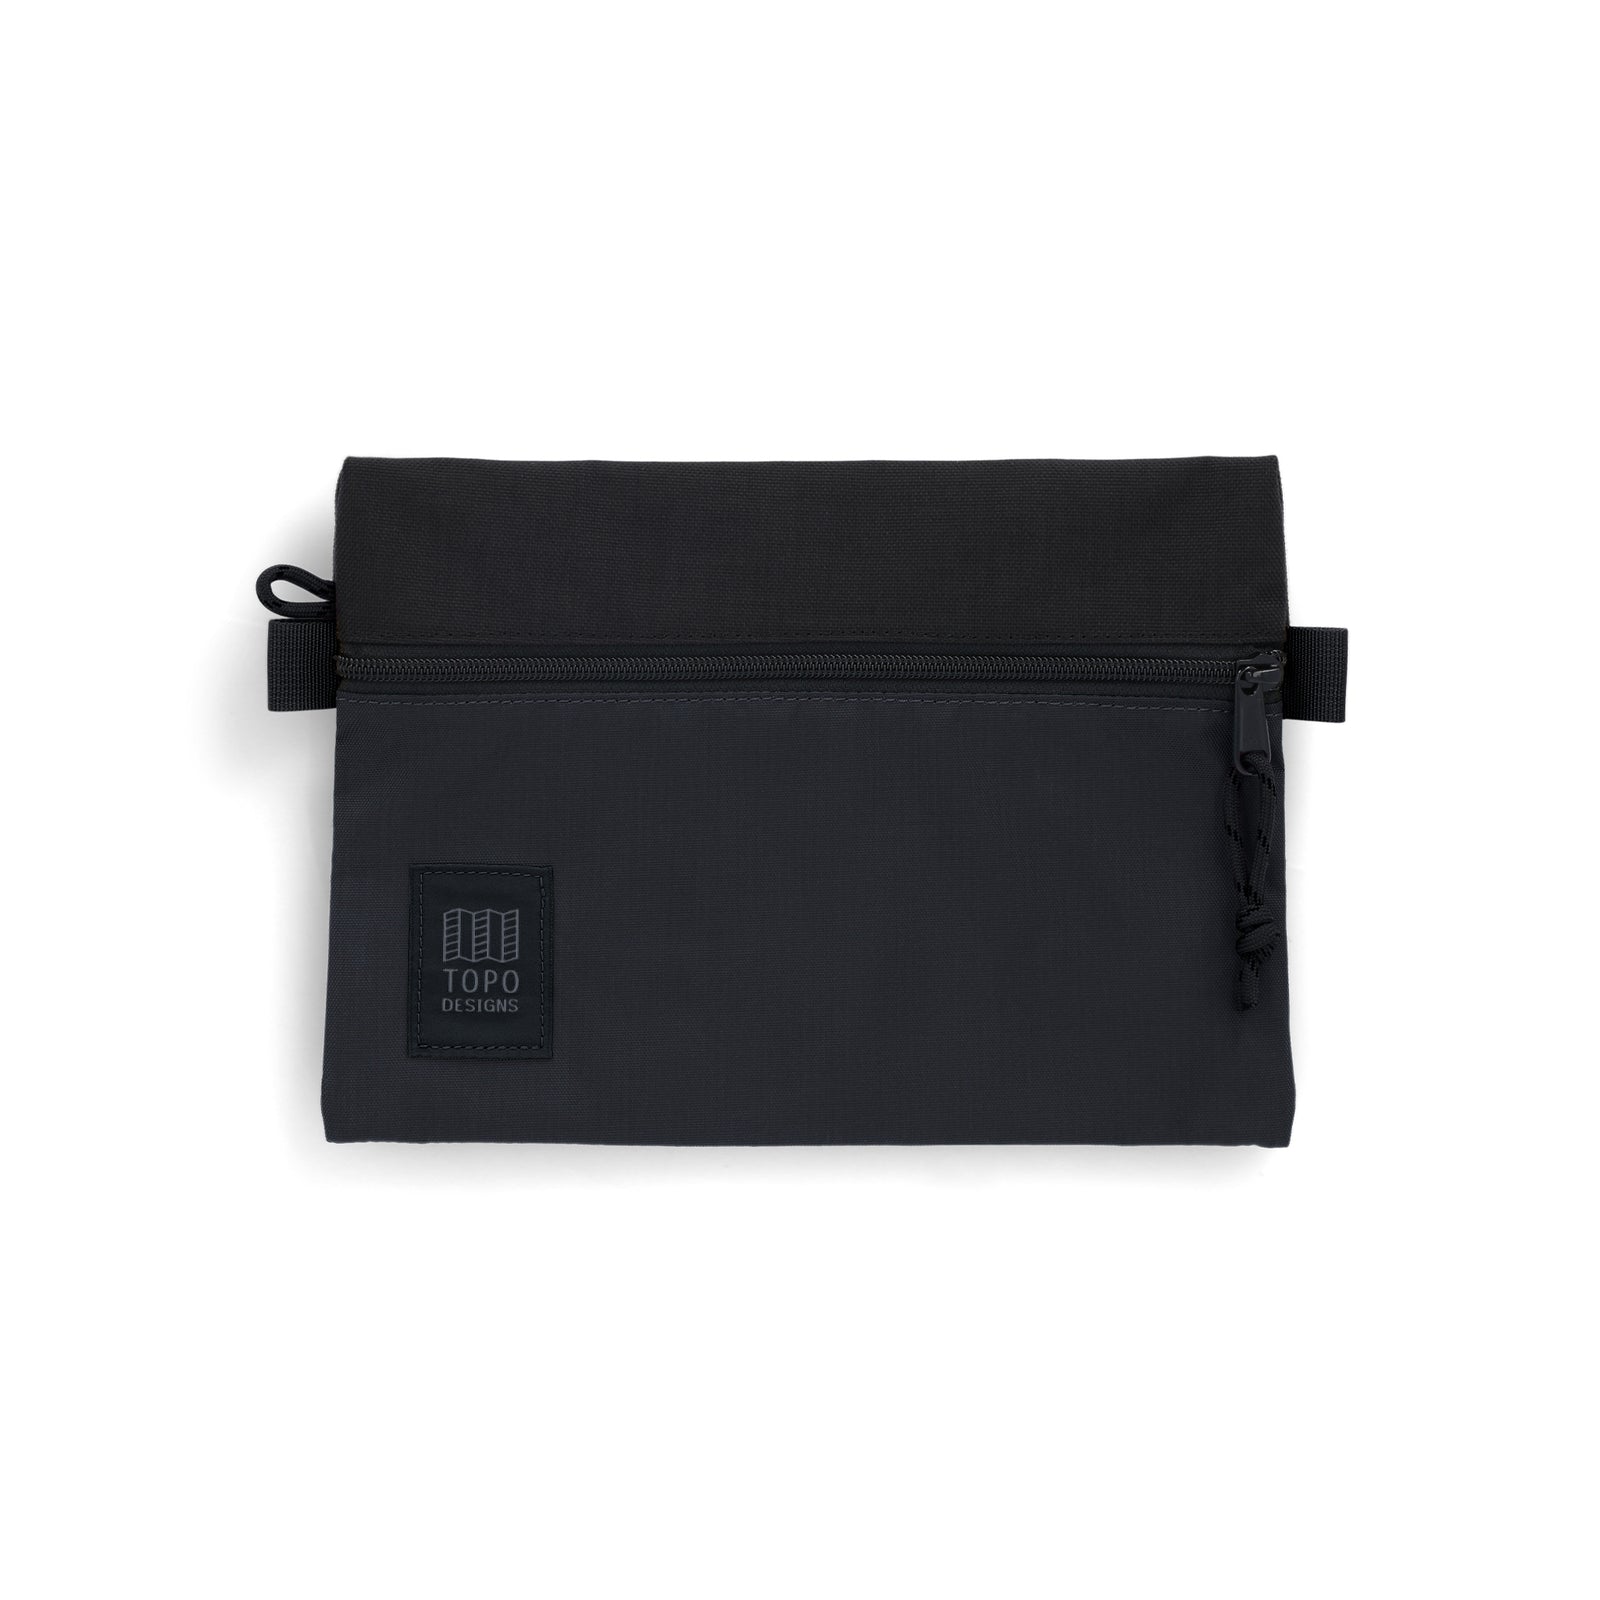 Topo Designs Accessory Bag "Medium" in "Black / Black"